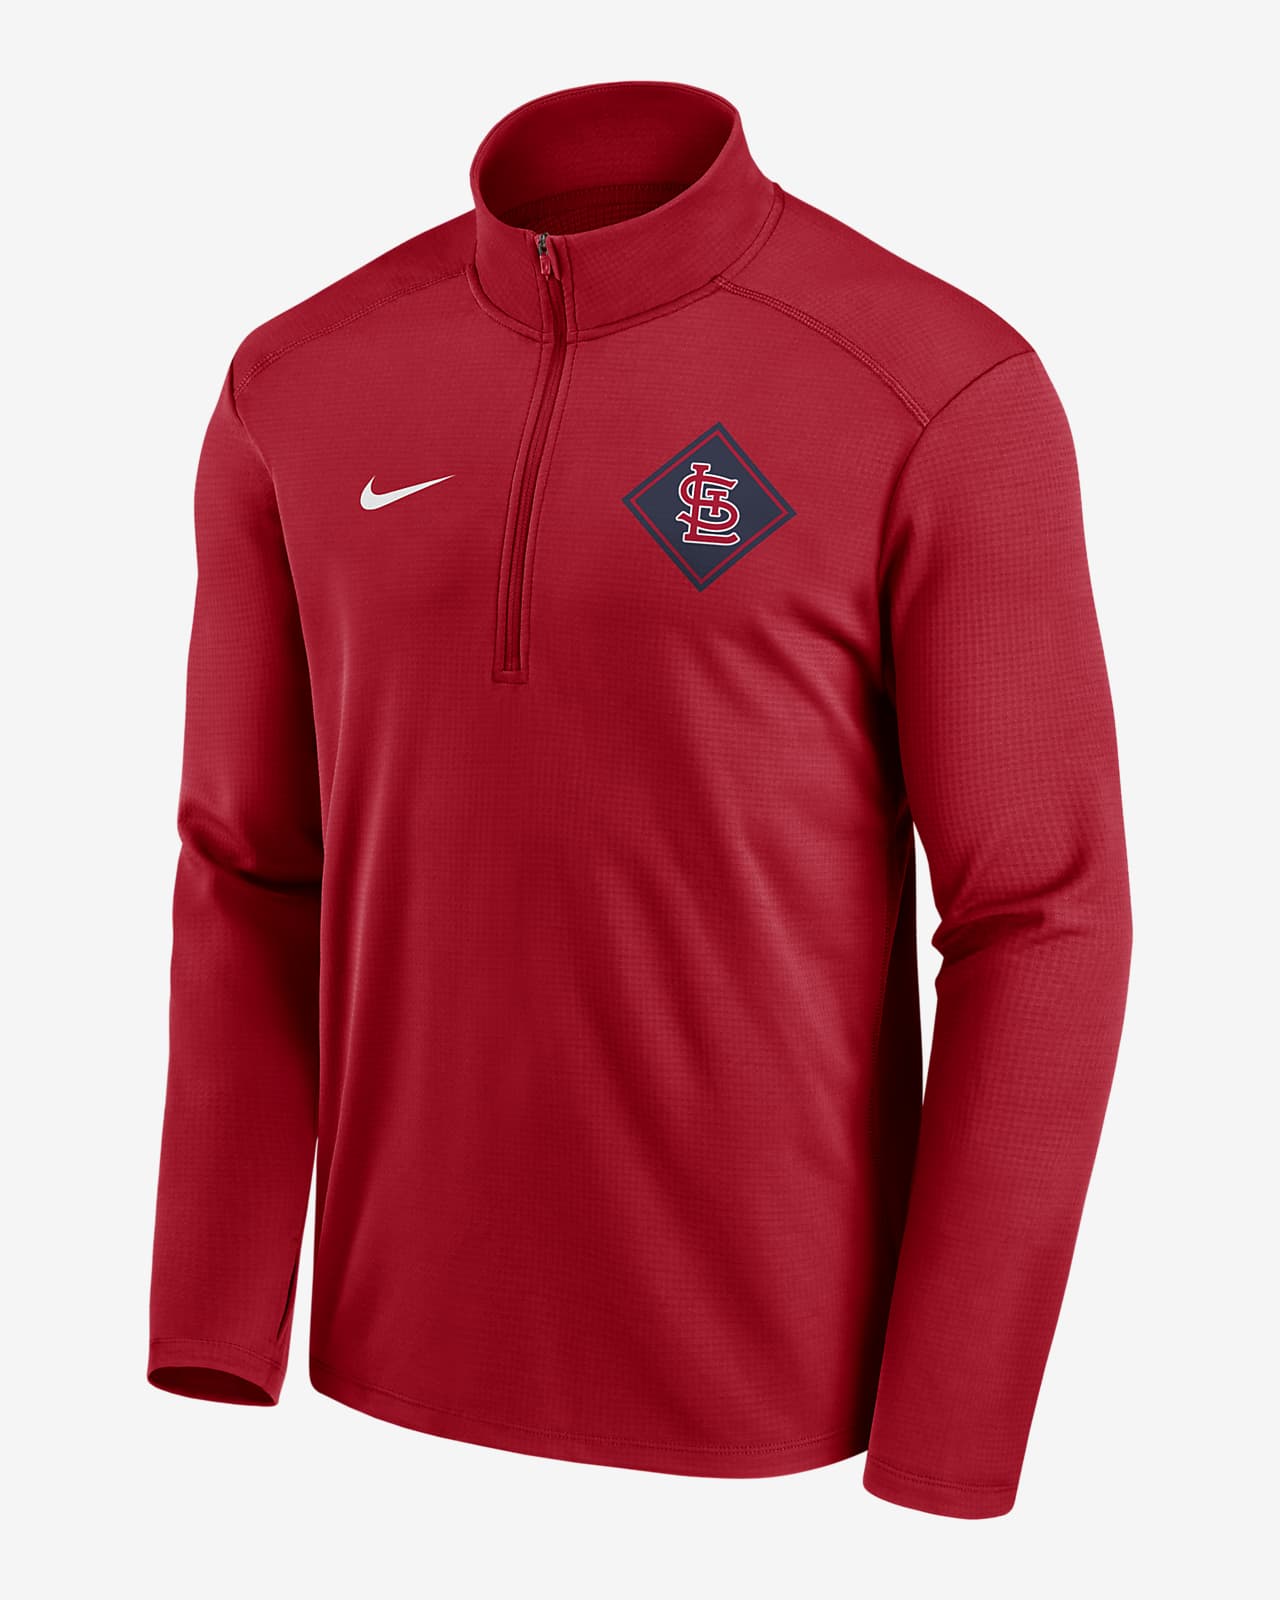 Nike Men's St. Louis Cardinals Authentic Collection Dugout Jacket